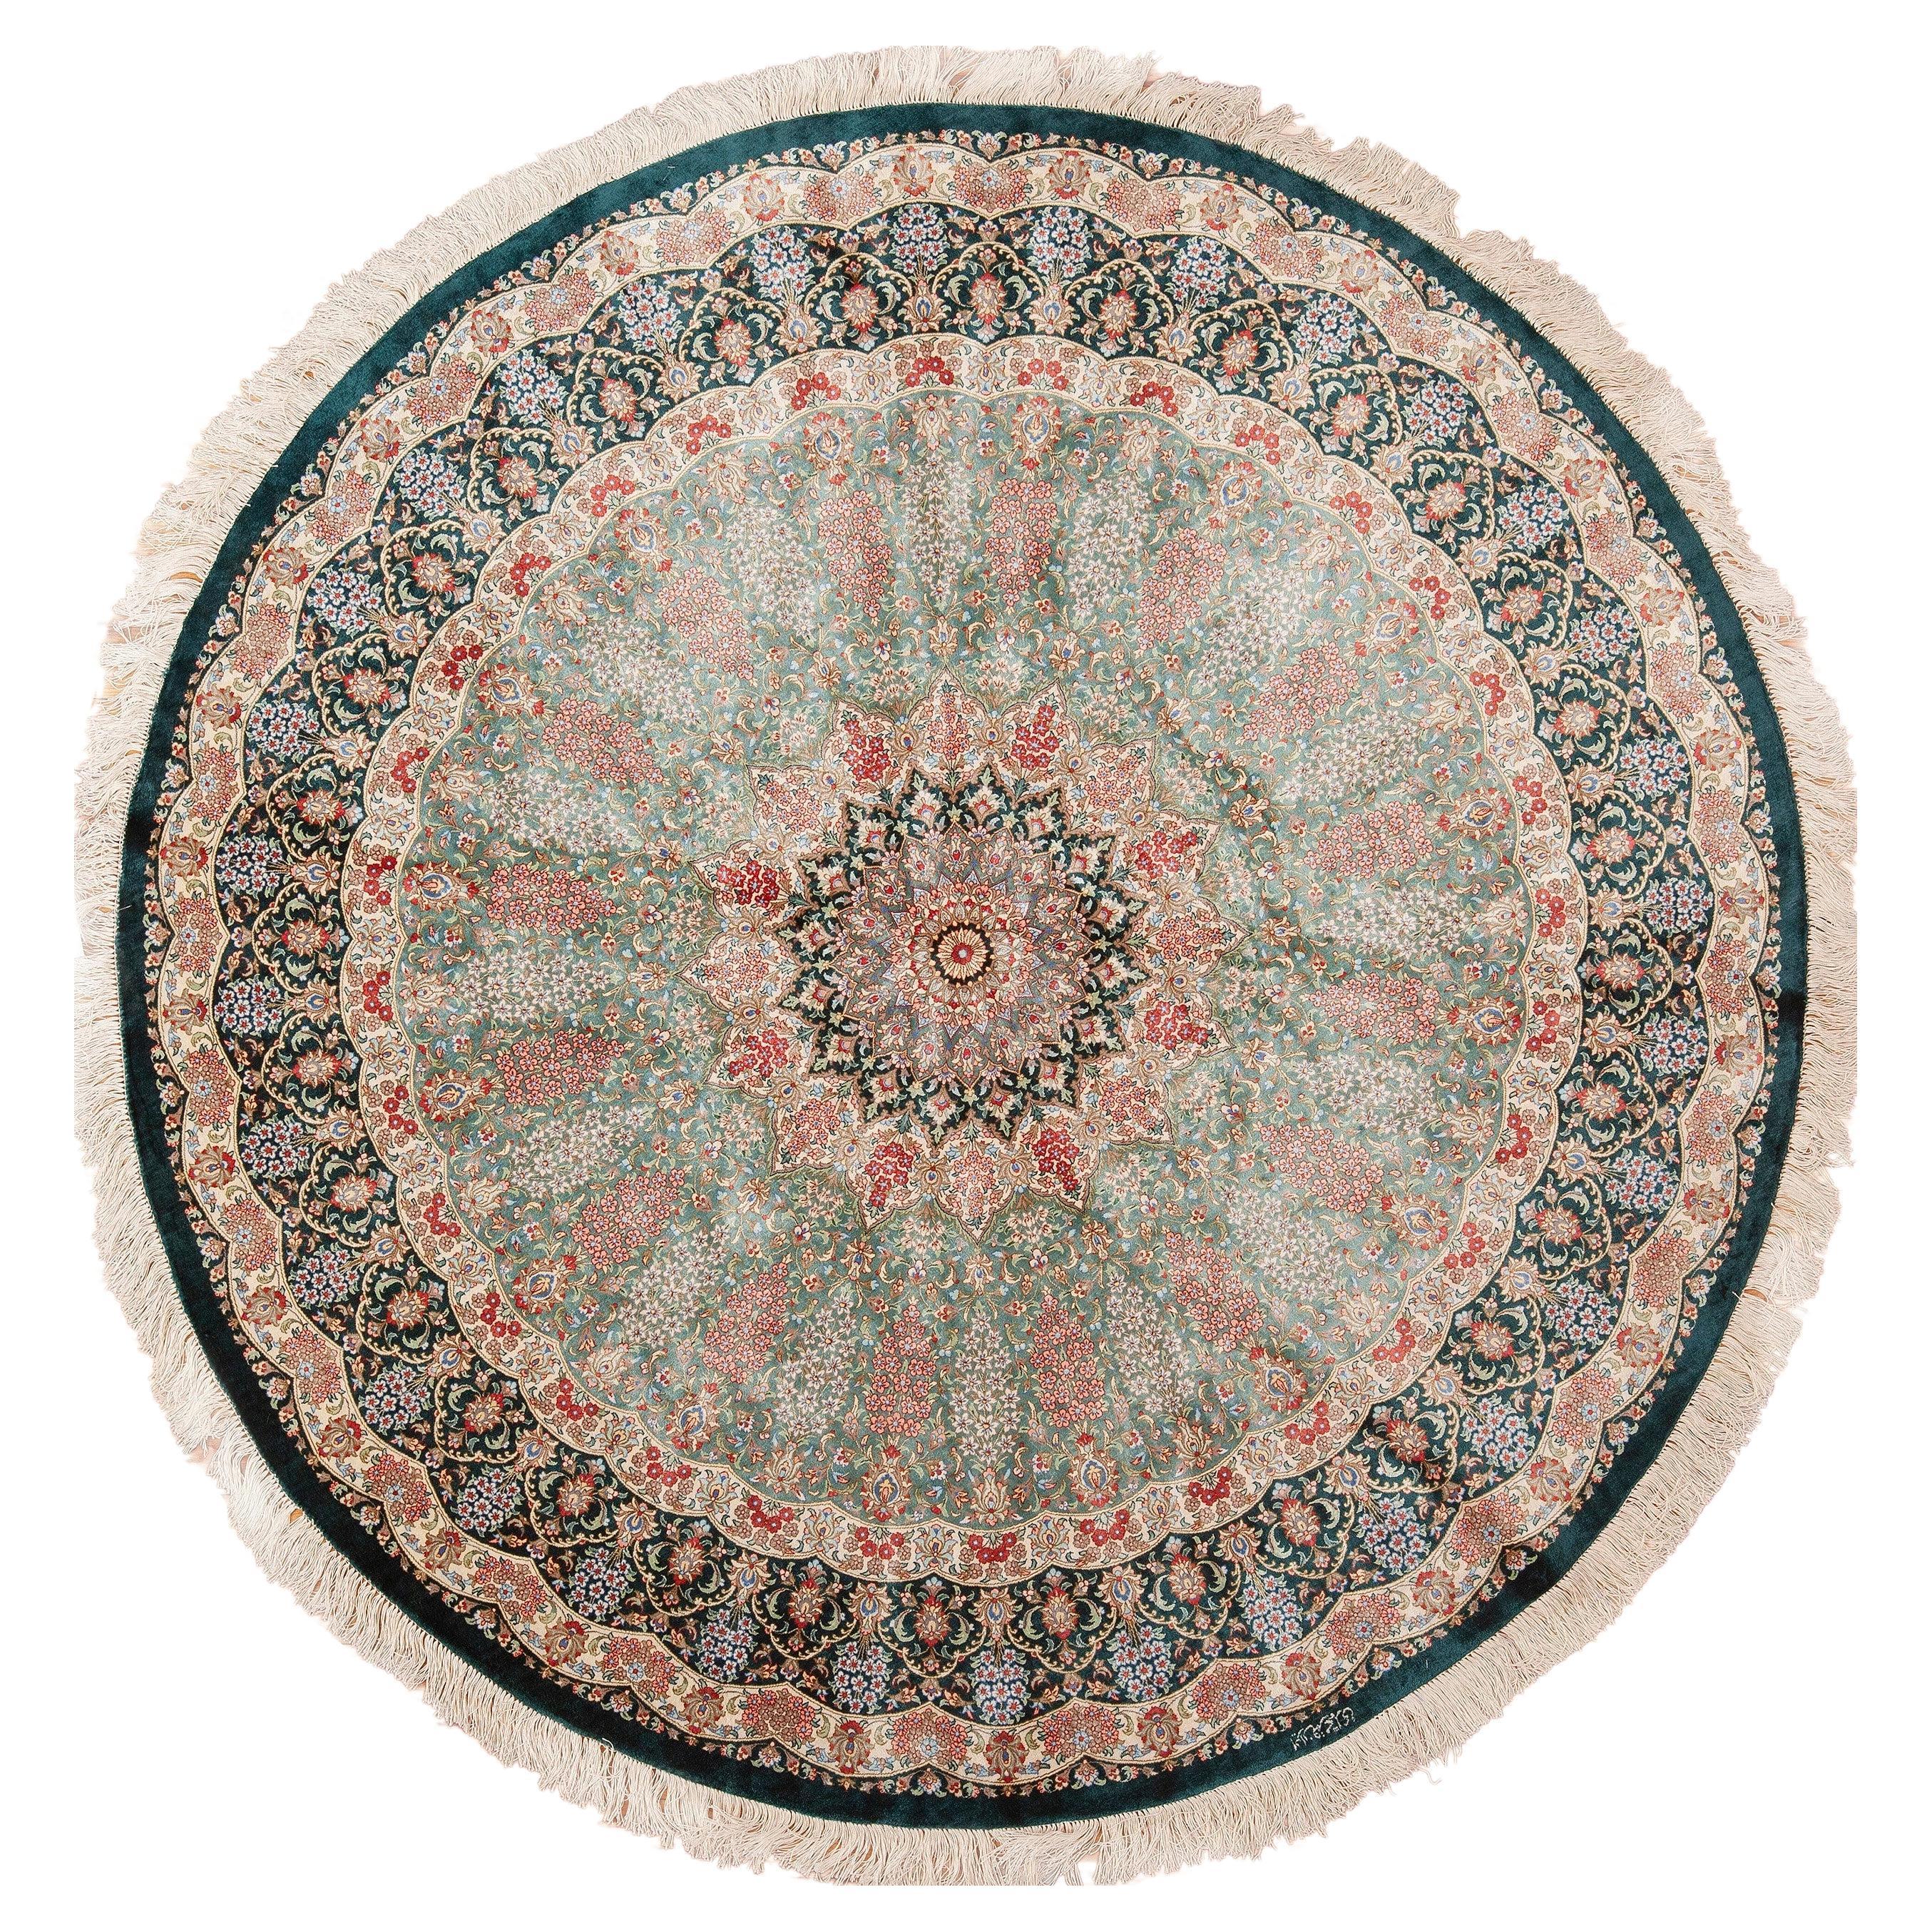 Tapis persan vintage en soie Qum 6'7" x 6'7" avec médaillon floral de forme ronde